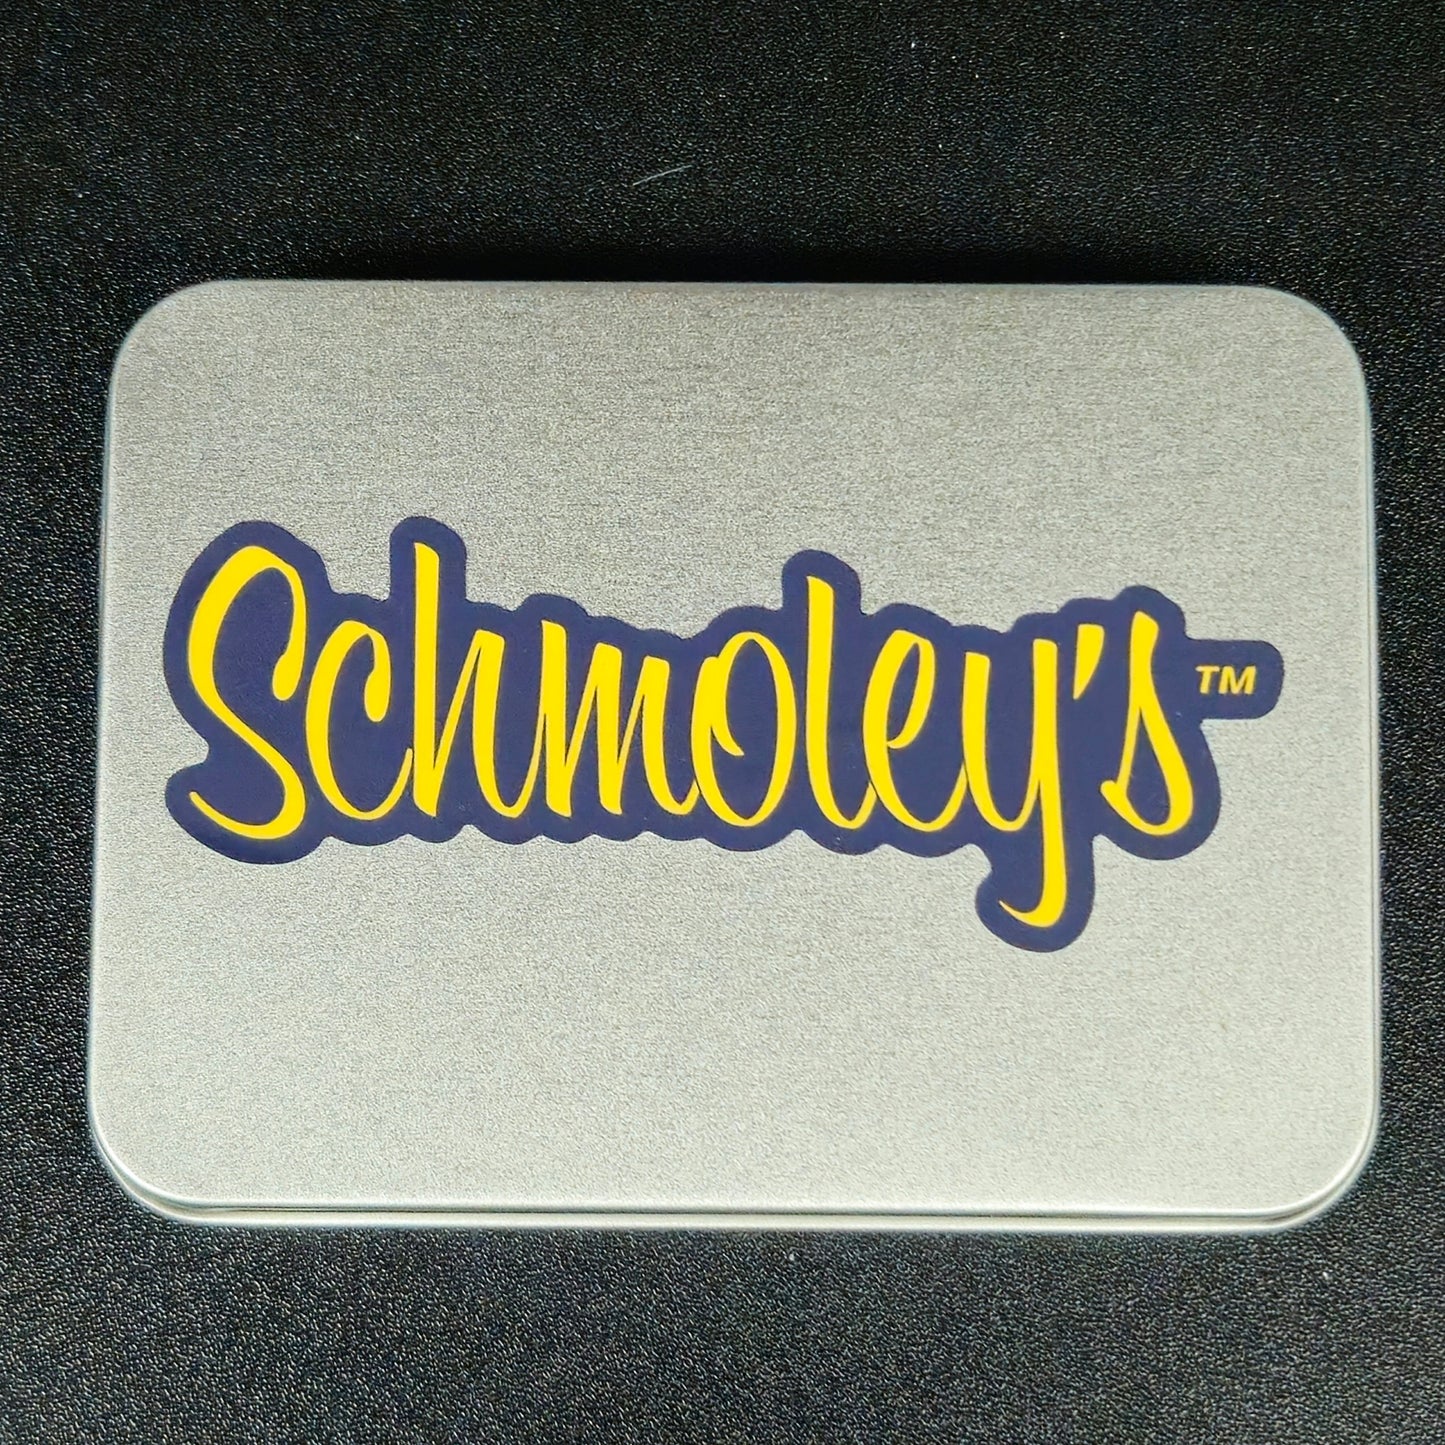 Schmoley's Skateboard Bearings